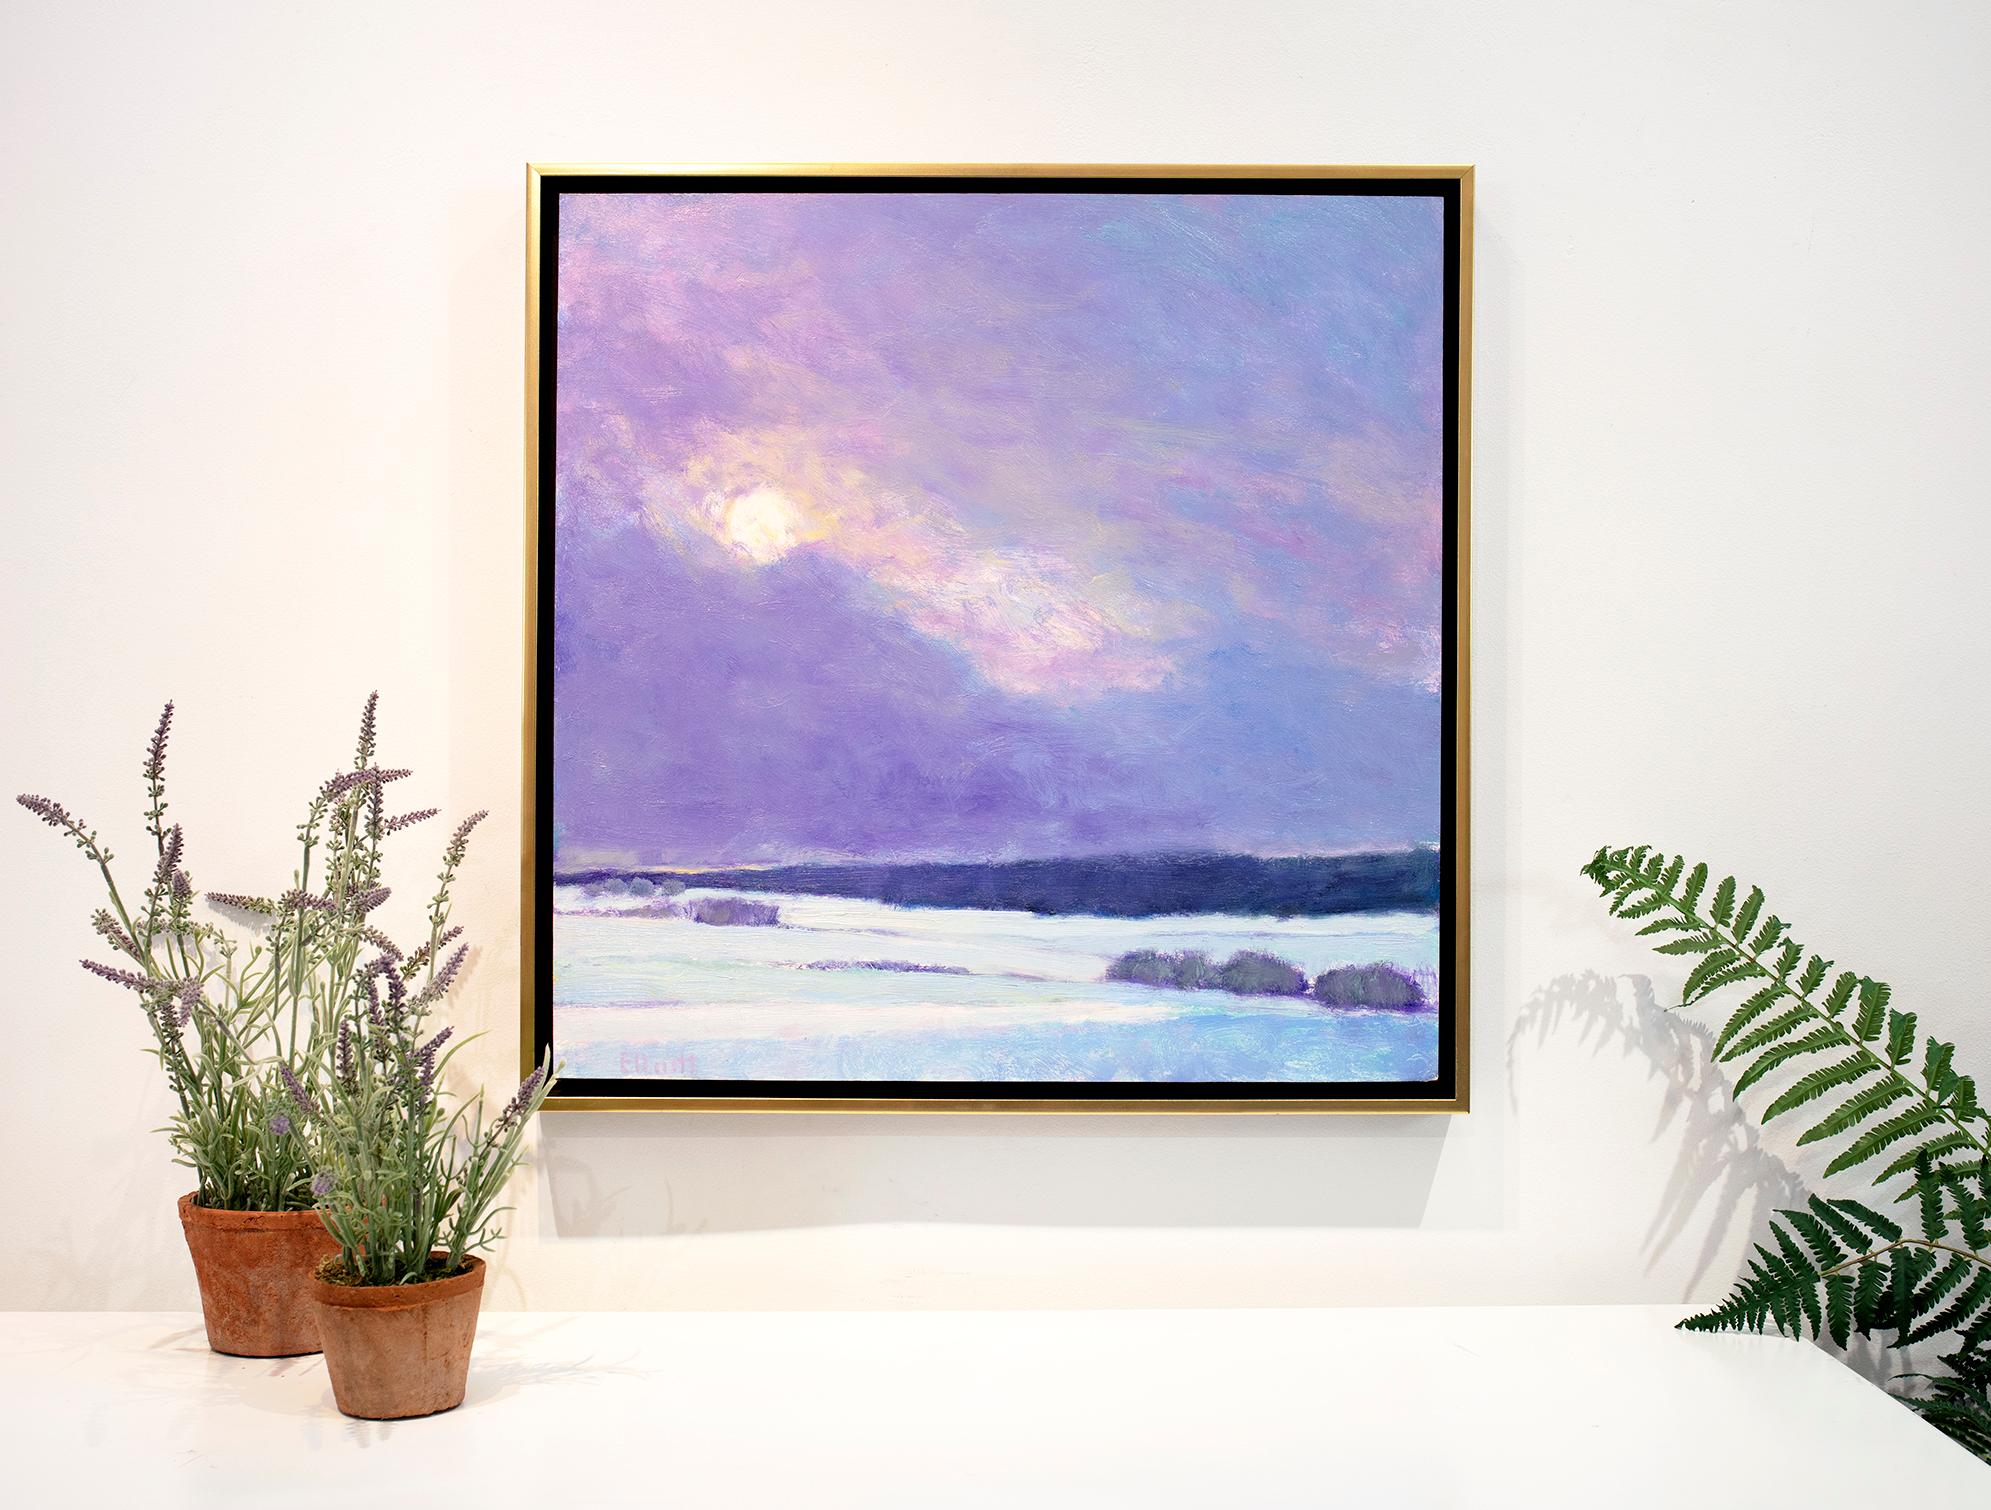 Sun on Snow II - Purple Landscape Painting by Ken Elliott